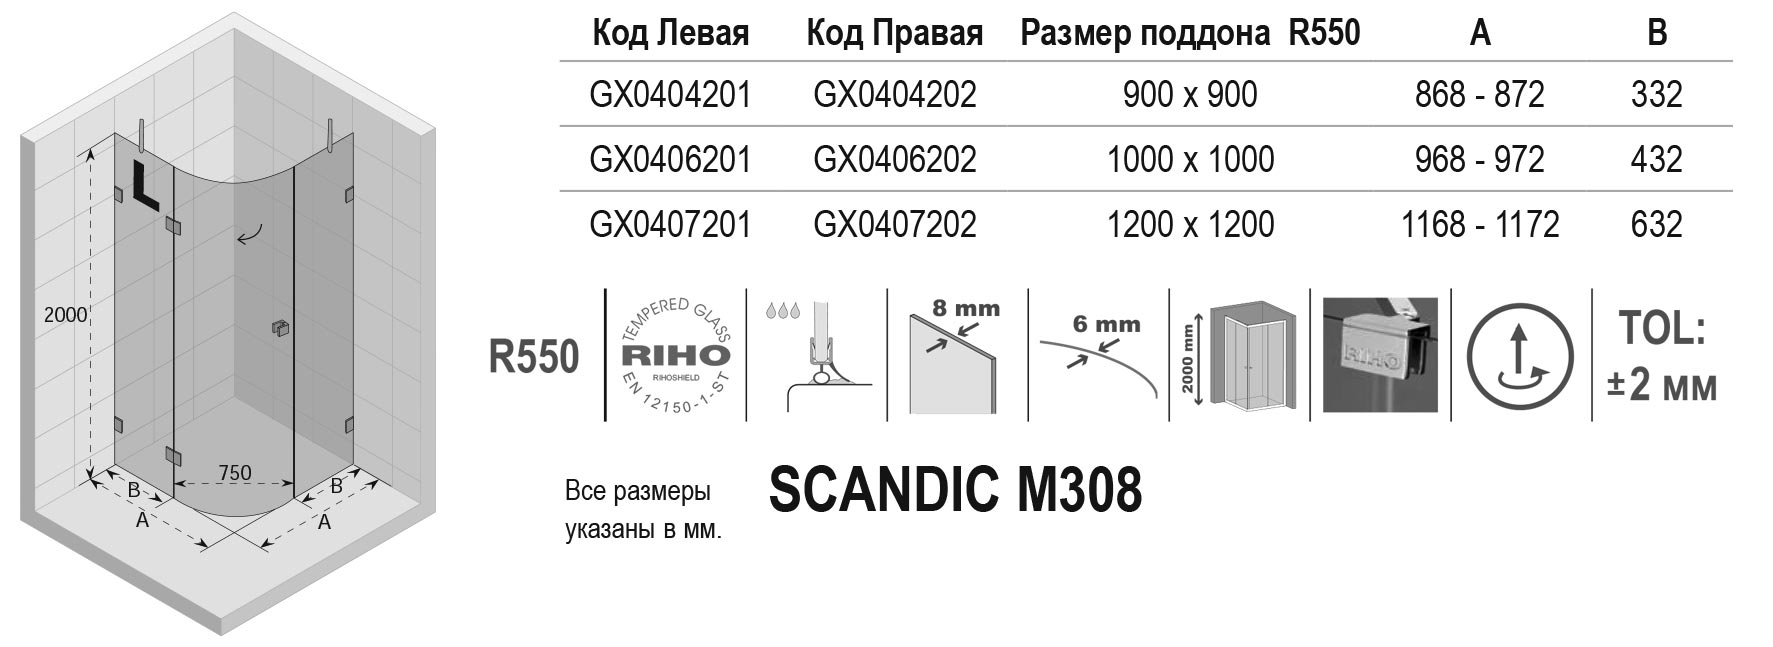 Чертёж Riho Scandic M308 GX0407201